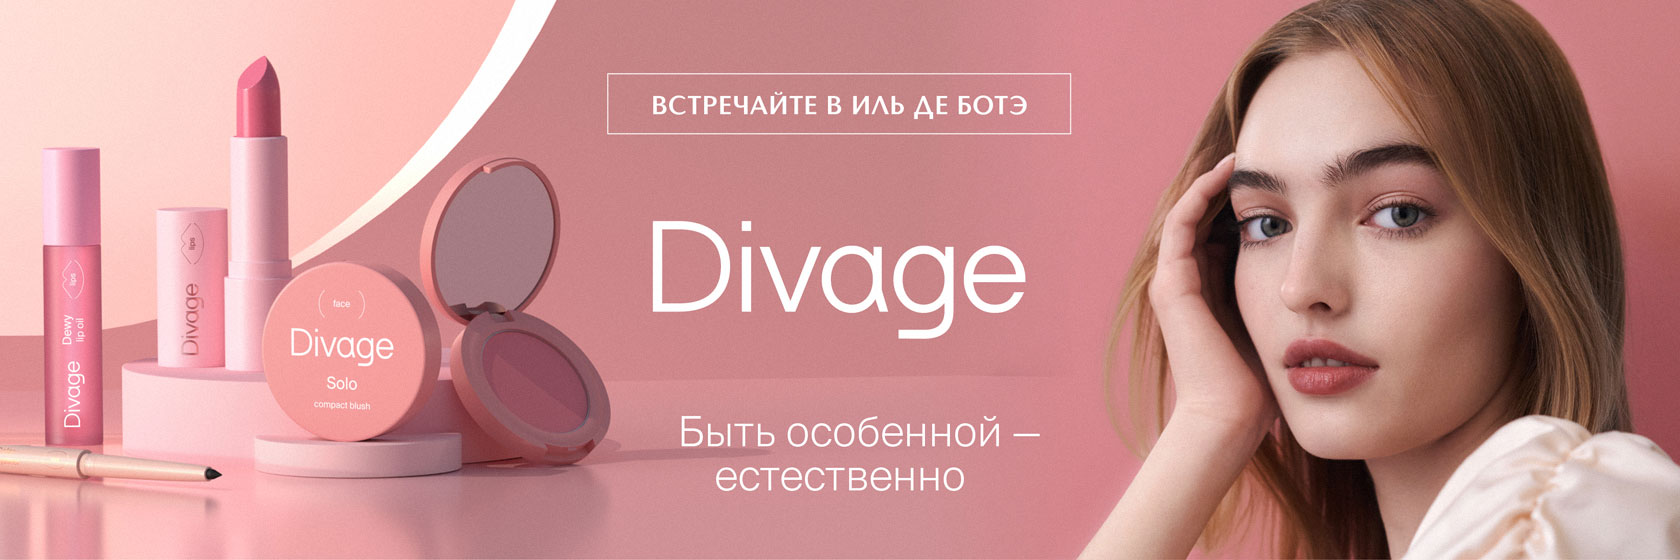 Встречайте новый бренд DIVAGE в ИЛЬ ДЕ БОТЭ!